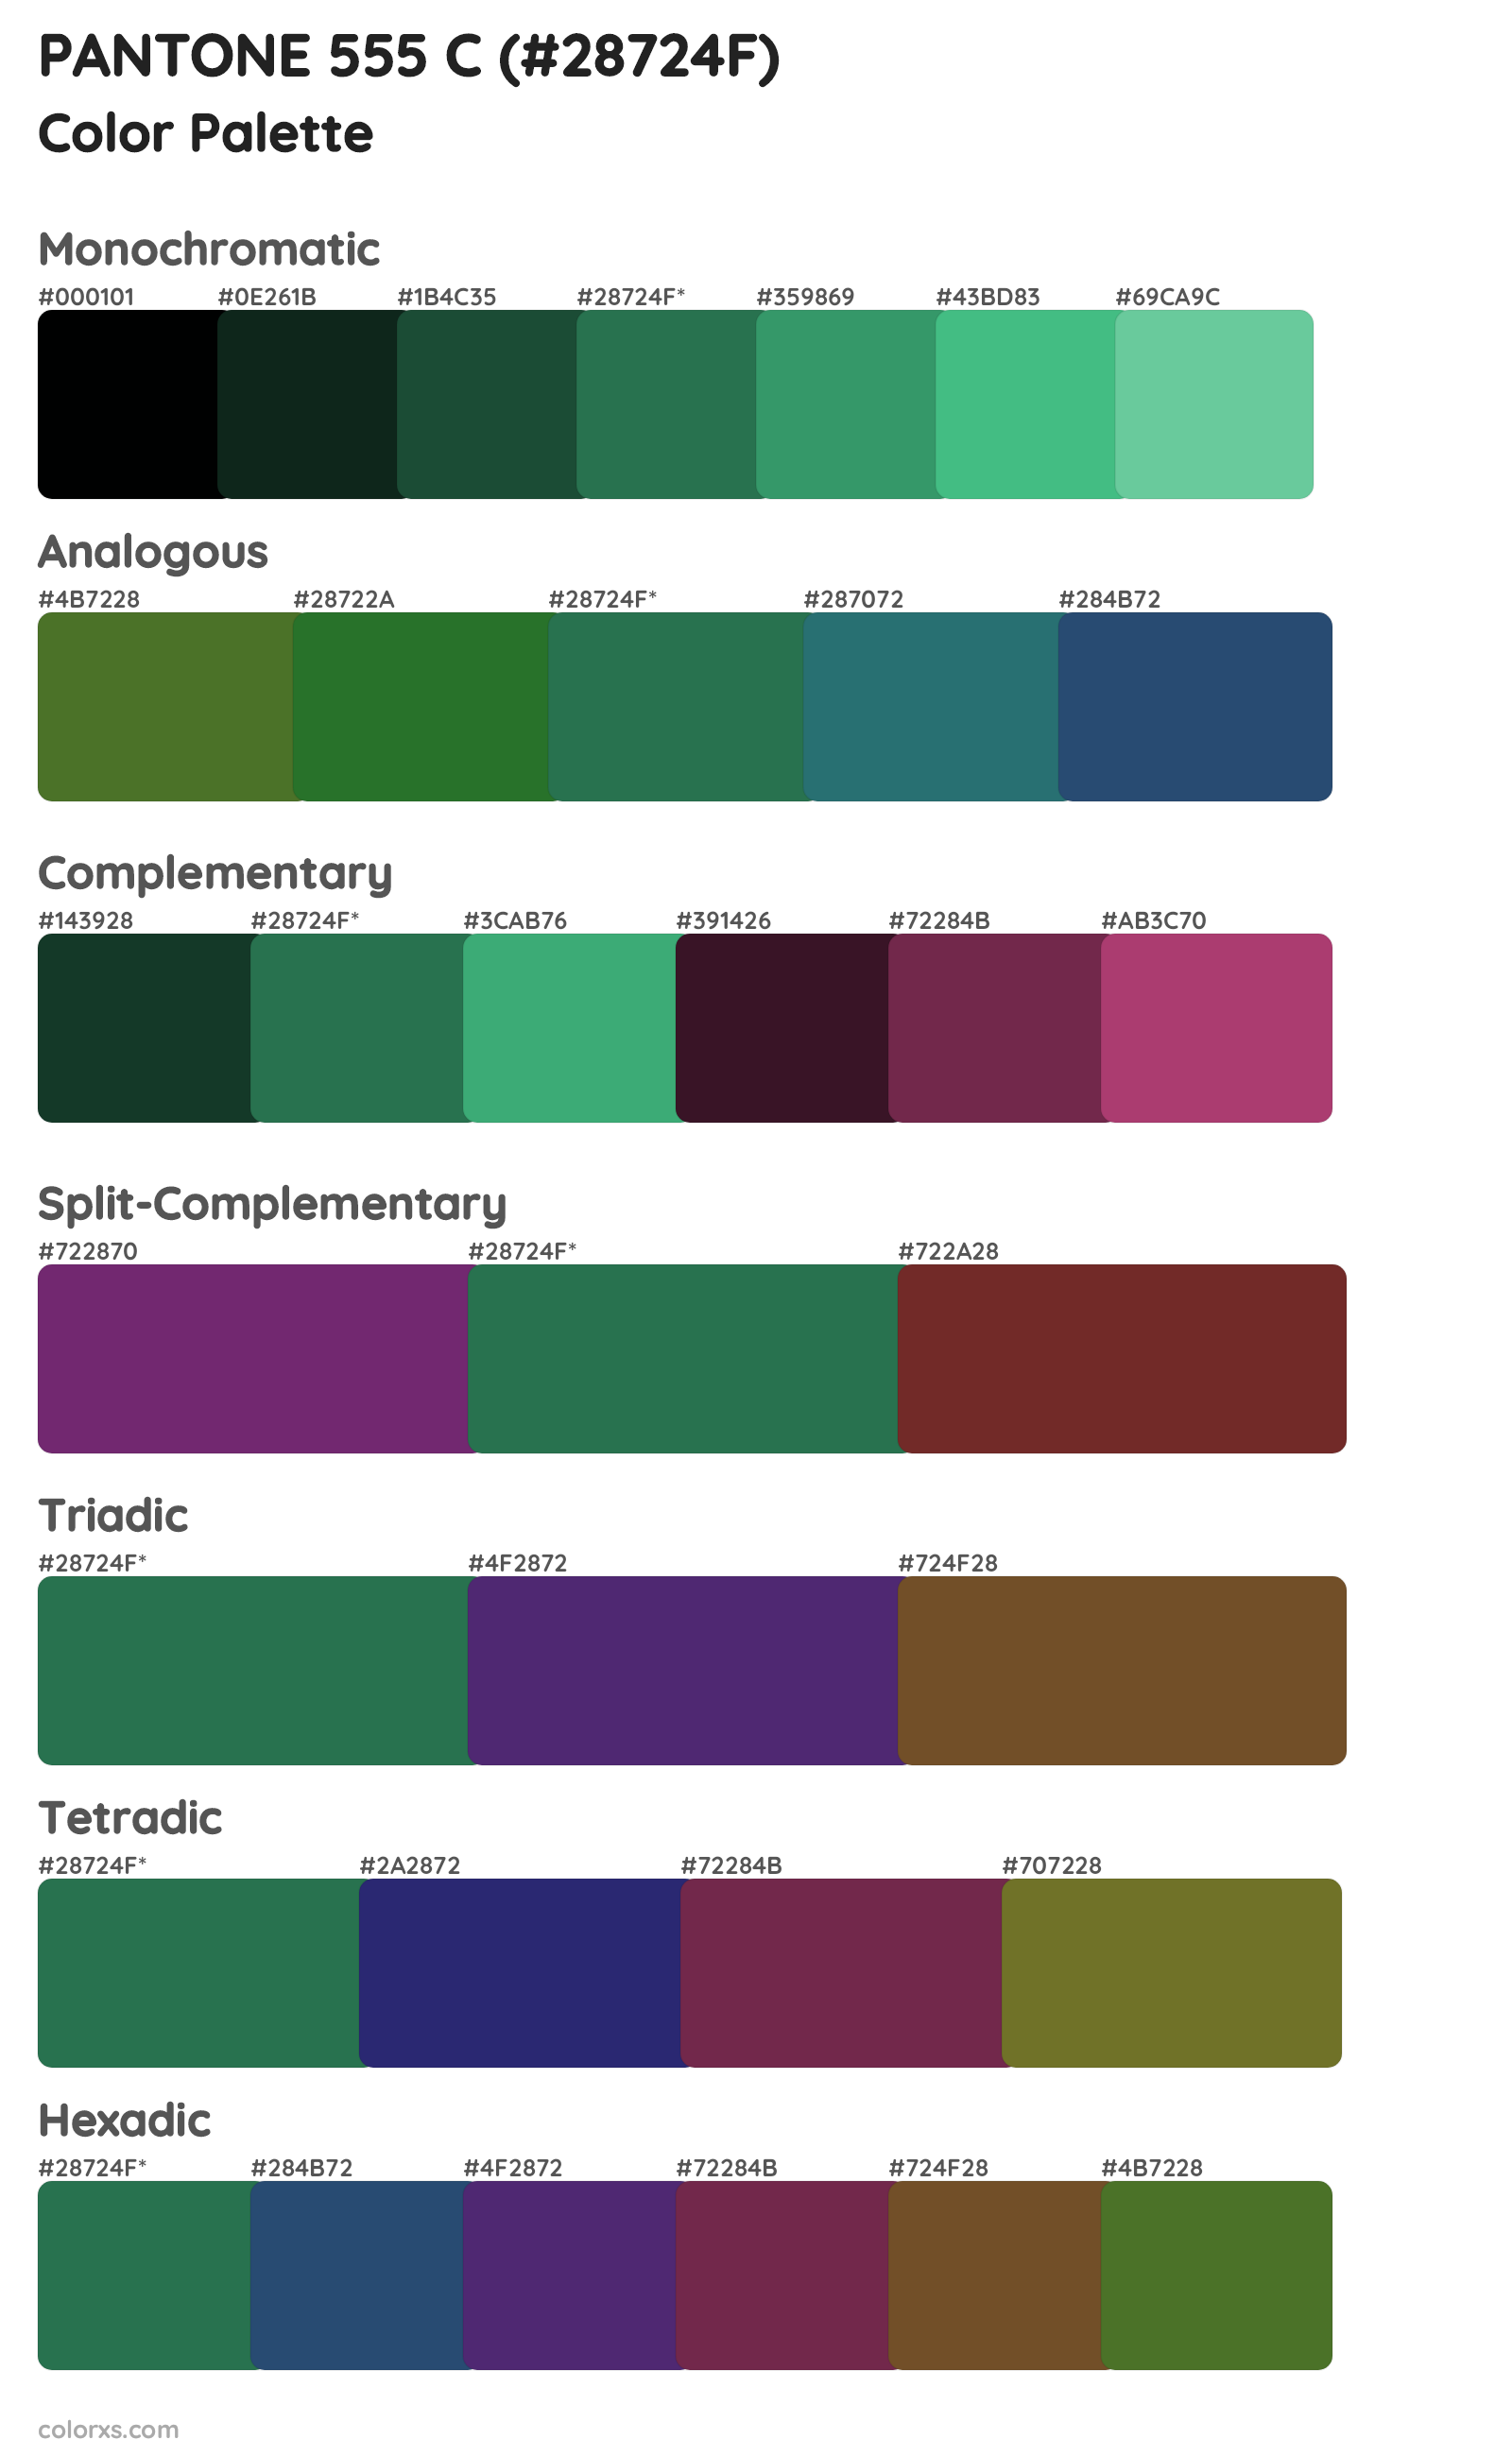 PANTONE 555 C Color Scheme Palettes